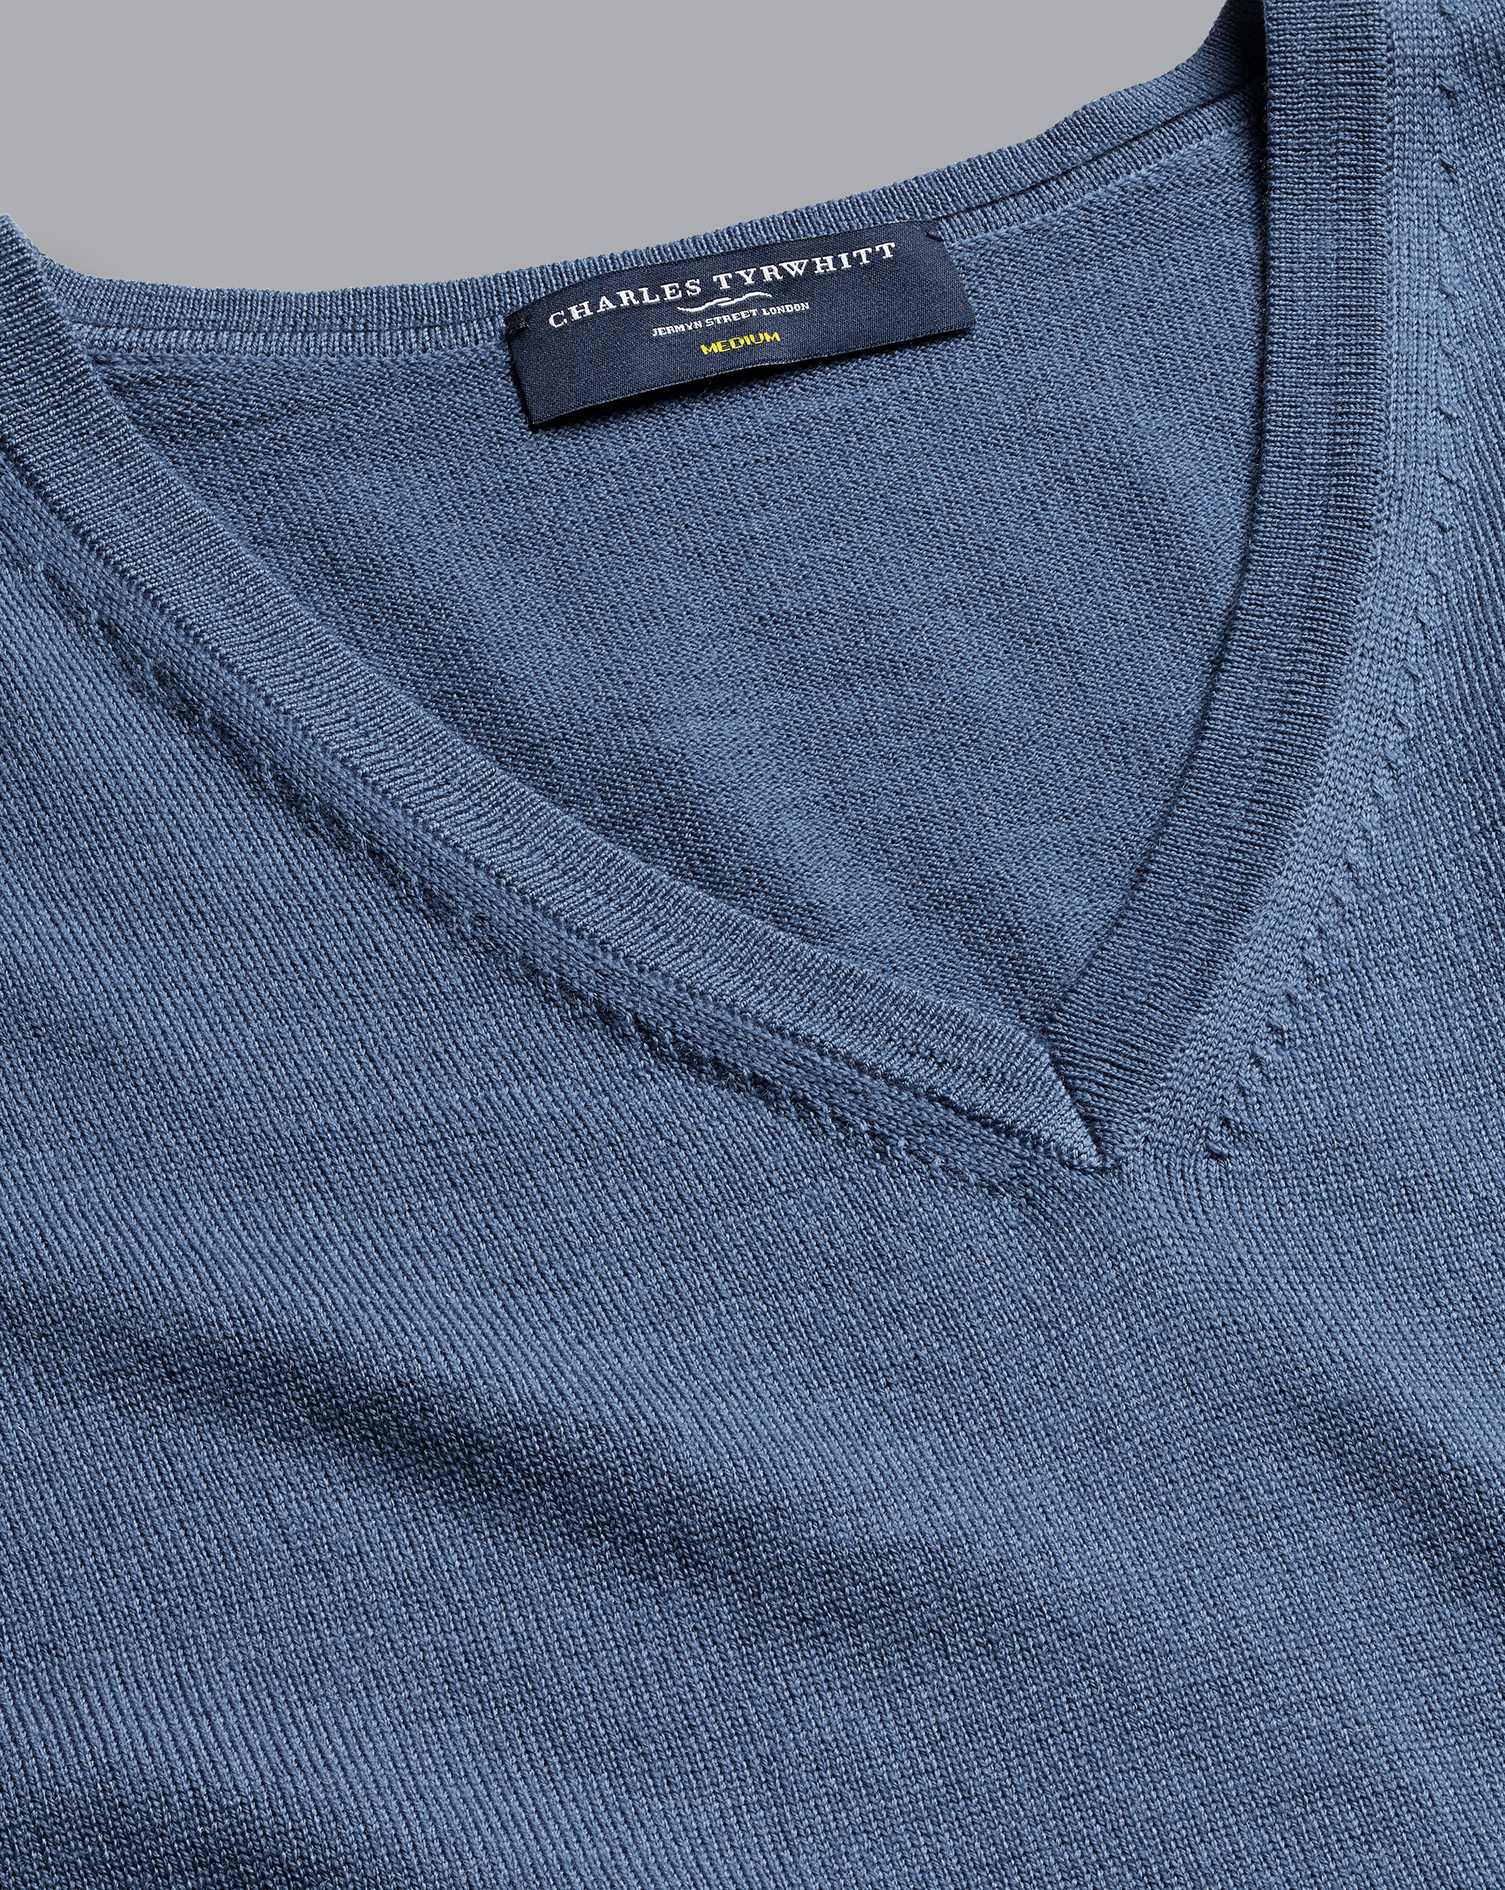 Men's Charles Tyrwhitt Merino V-Neck Sweater - Steel Blue Size Small Wool
